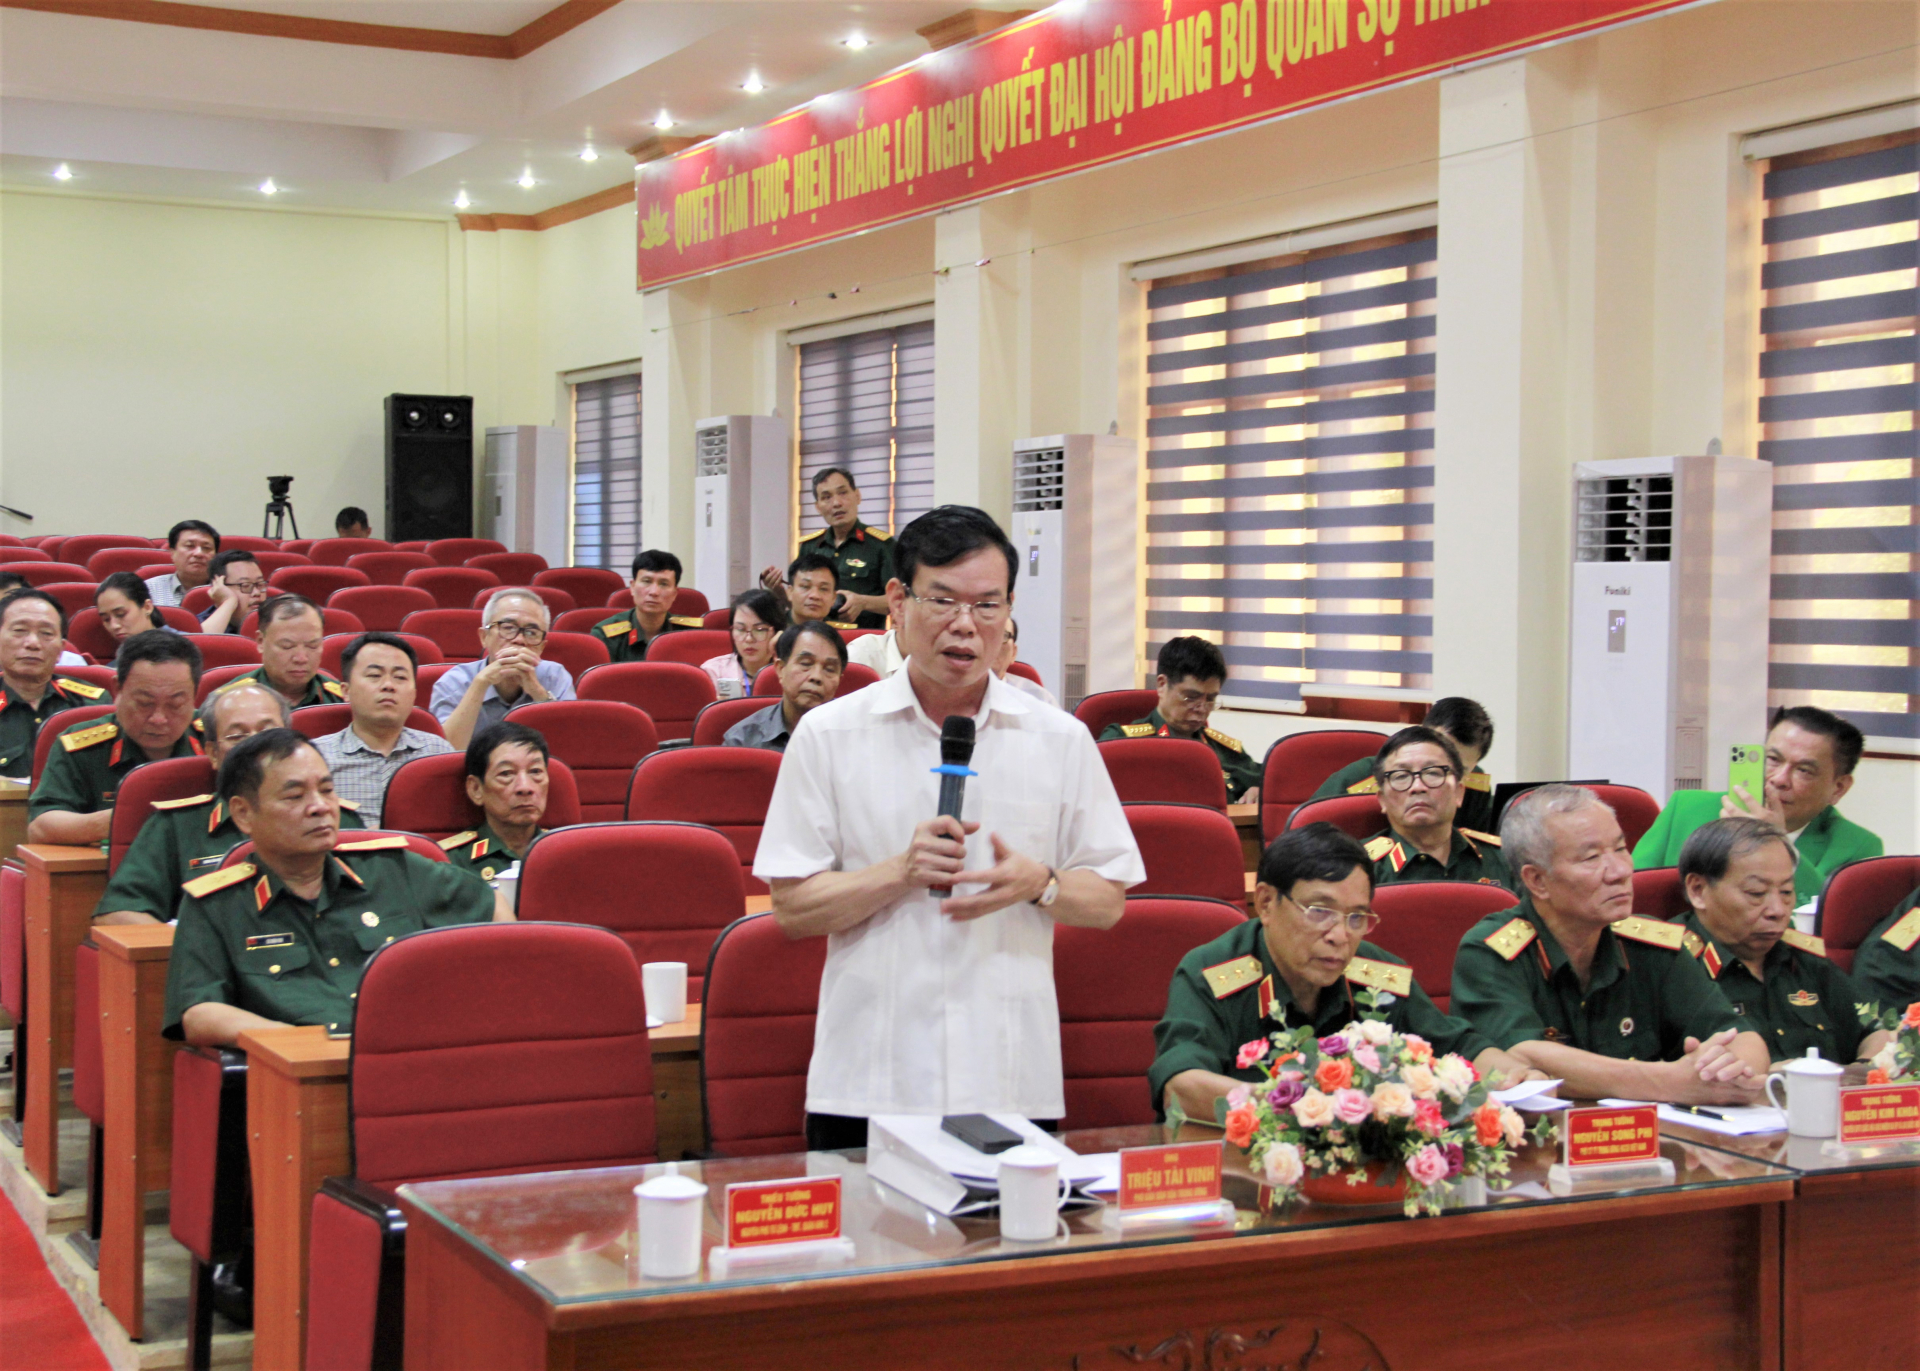 Phó Trưởng Ban Dân Vận T.Ư Triệu Tài Vinh phát biểu tại buổi tọa đàm.